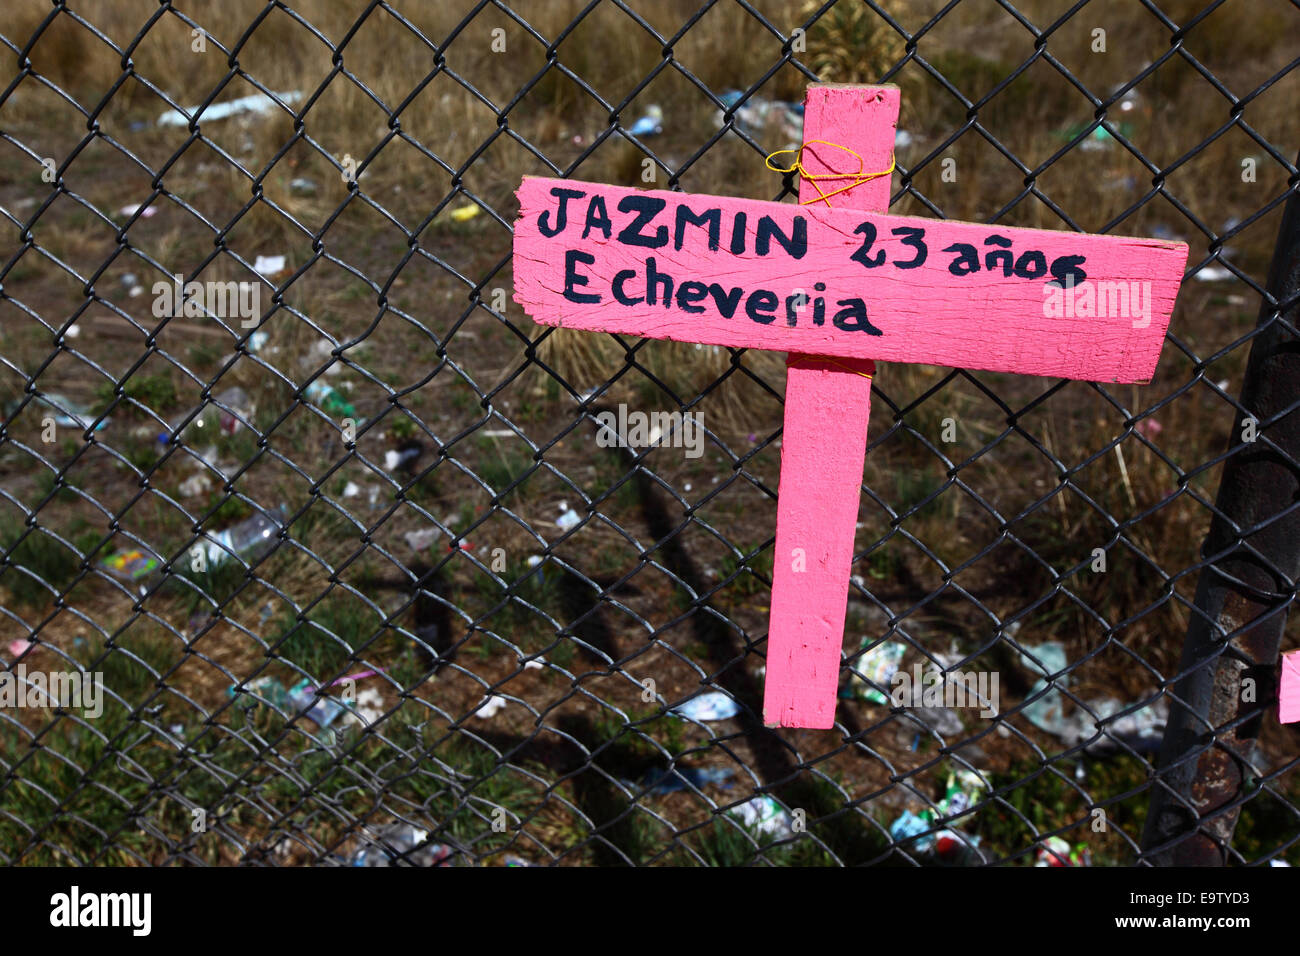 EL ALTO, Bolivien, 2. November 2014. Ein rosa Kreuz mit den Namen der eine junge 23 jährige Frau auf einem Maschendrahtzaun, Teil einer Gedenkstätte für die jüngsten Opfer der Frauenmorde und häusliche Gewalt gegen Frauen. Laut einem Bericht der WHO im Januar 2013 ist Bolivien das Land mit der höchsten Rate der Gewalt gegen Frauen in Lateinamerika. Bildnachweis: James Brunker / Alamy Live News Stockfoto